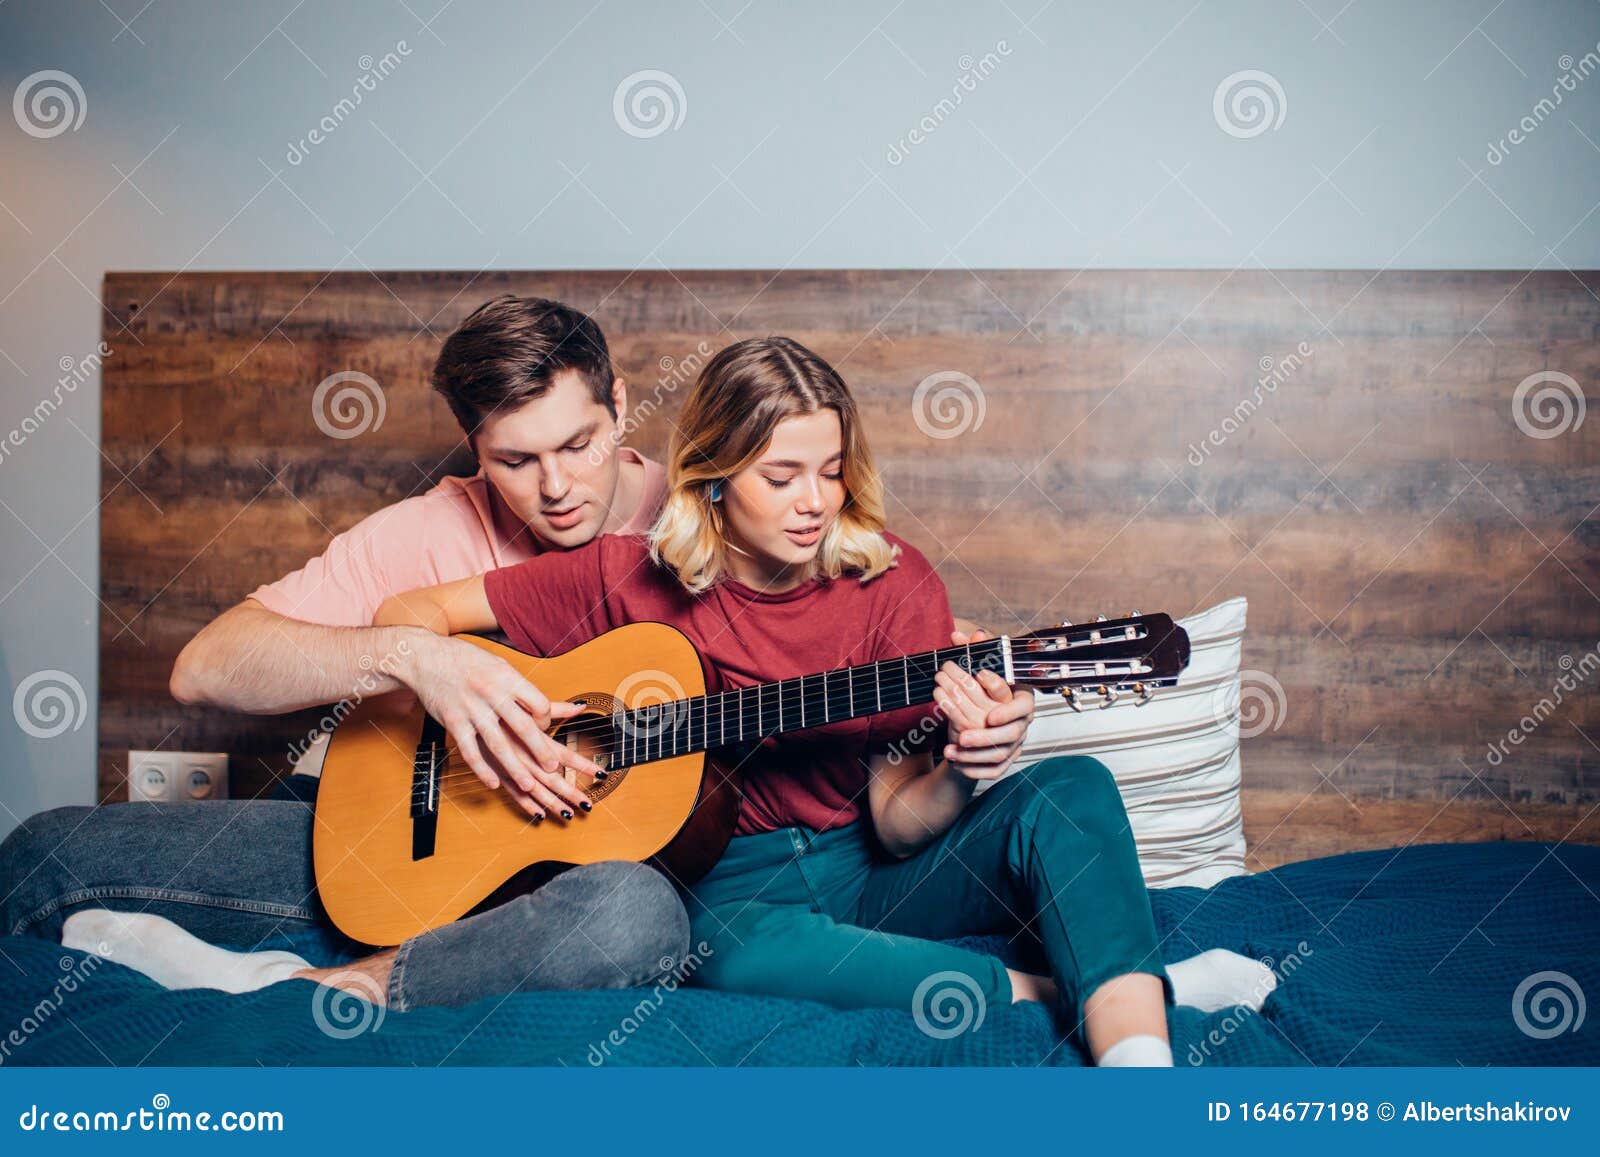 https://thumbs.dreamstime.com/z/bonita-pareja-descansando-en-casa-y-tocando-guitarra-joven-novio-ense%C3%B1ando-su-novia-tocar-la-encantadora-usando-ropa-informal-164677198.jpg